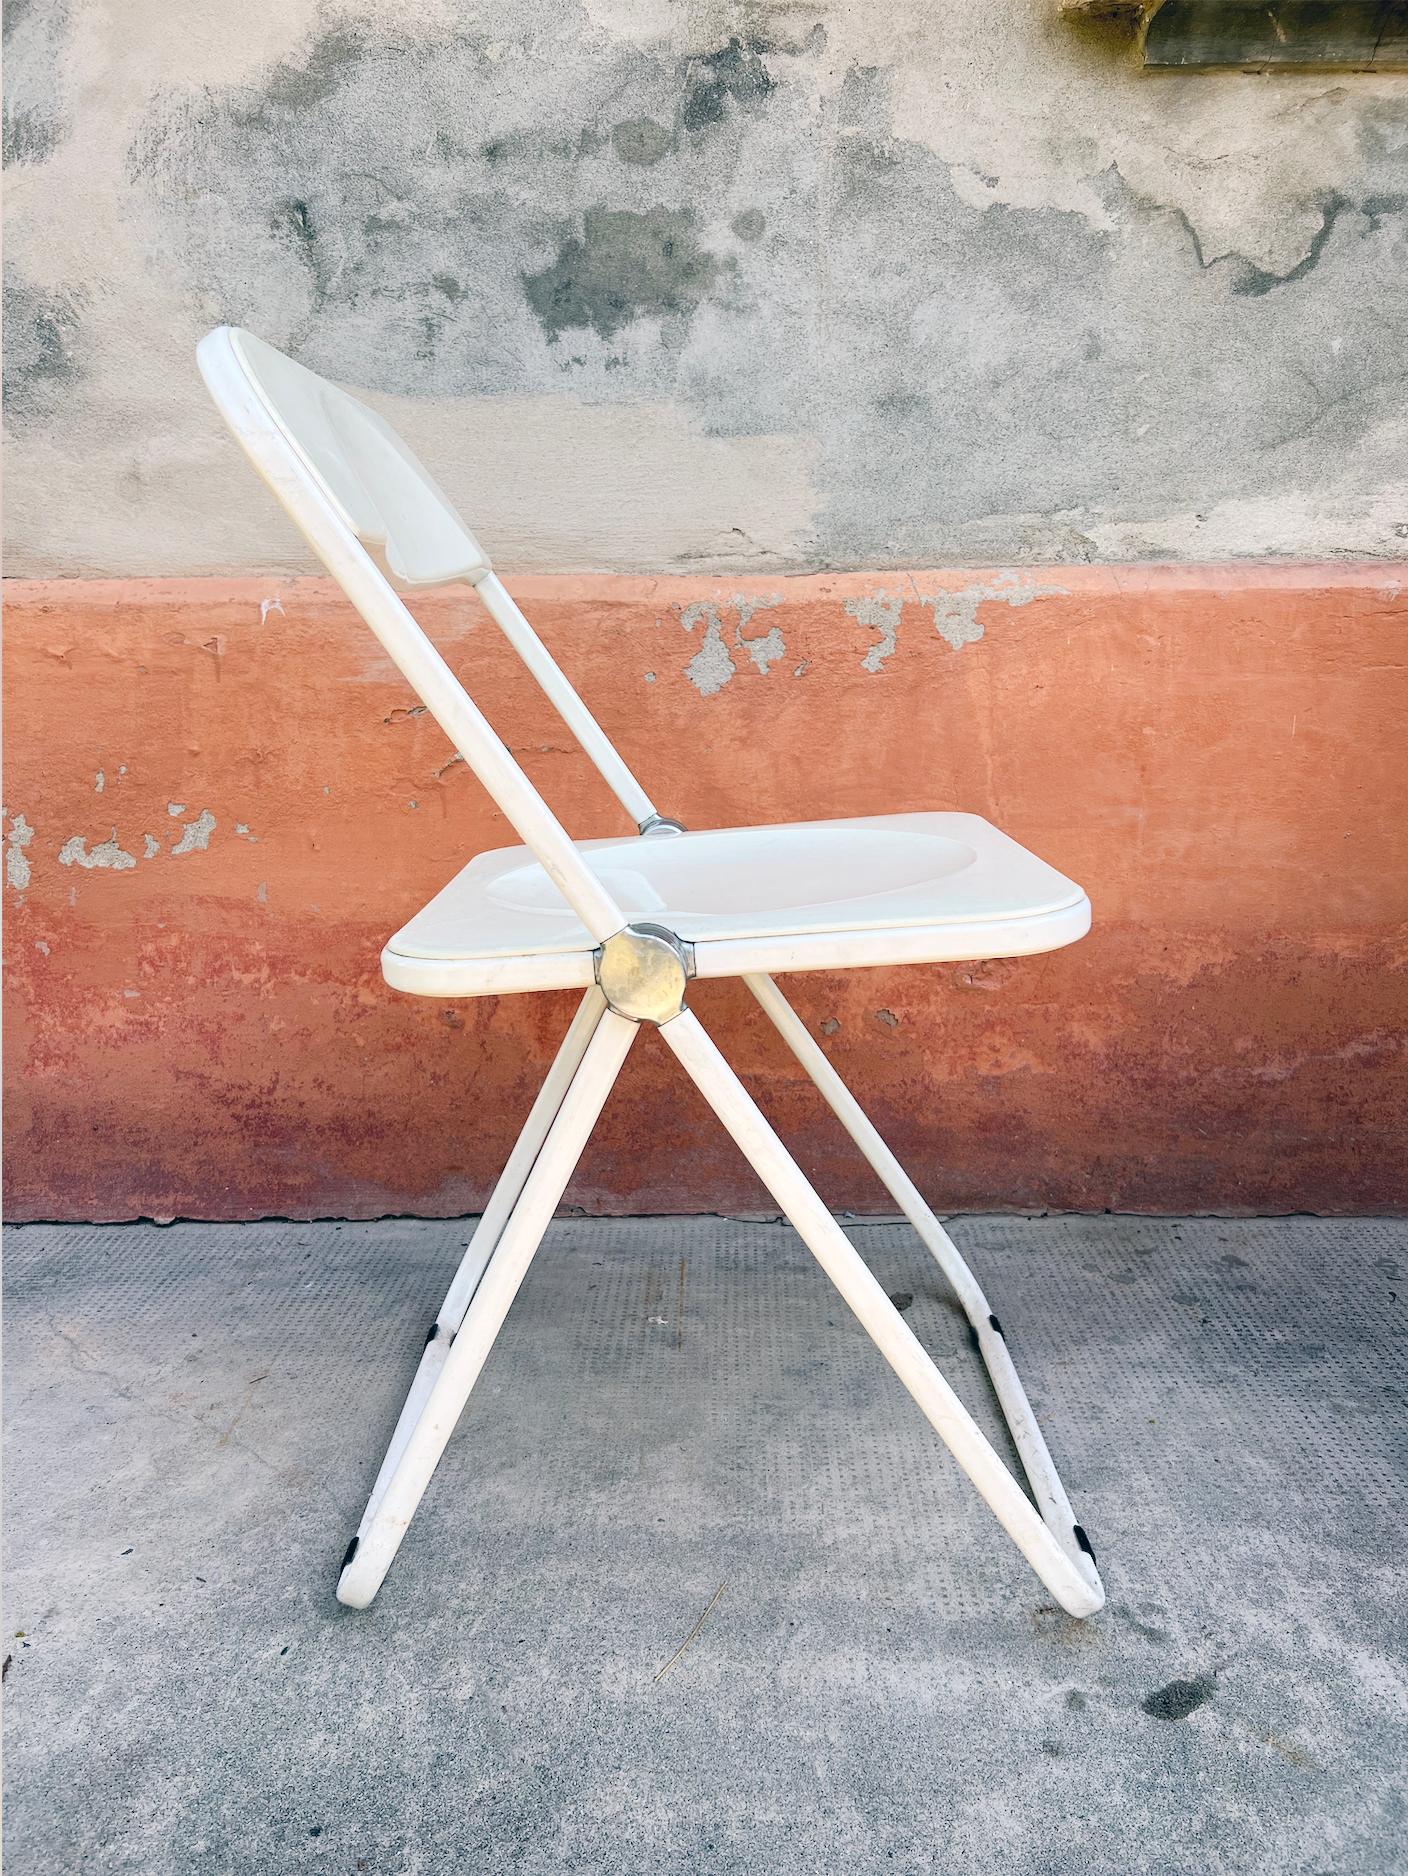 Das Symbol einer neuen Ära, die sich auf Kunststoff konzentriert:    So wurde der Plia-Stuhl 1967 bei seiner Veröffentlichung auf der Mailänder Möbelmesse aufgenommen.  .

Mit dem Plia-Klappstuhl,  der Designer Giancarlo Piretti  revolutionierte das